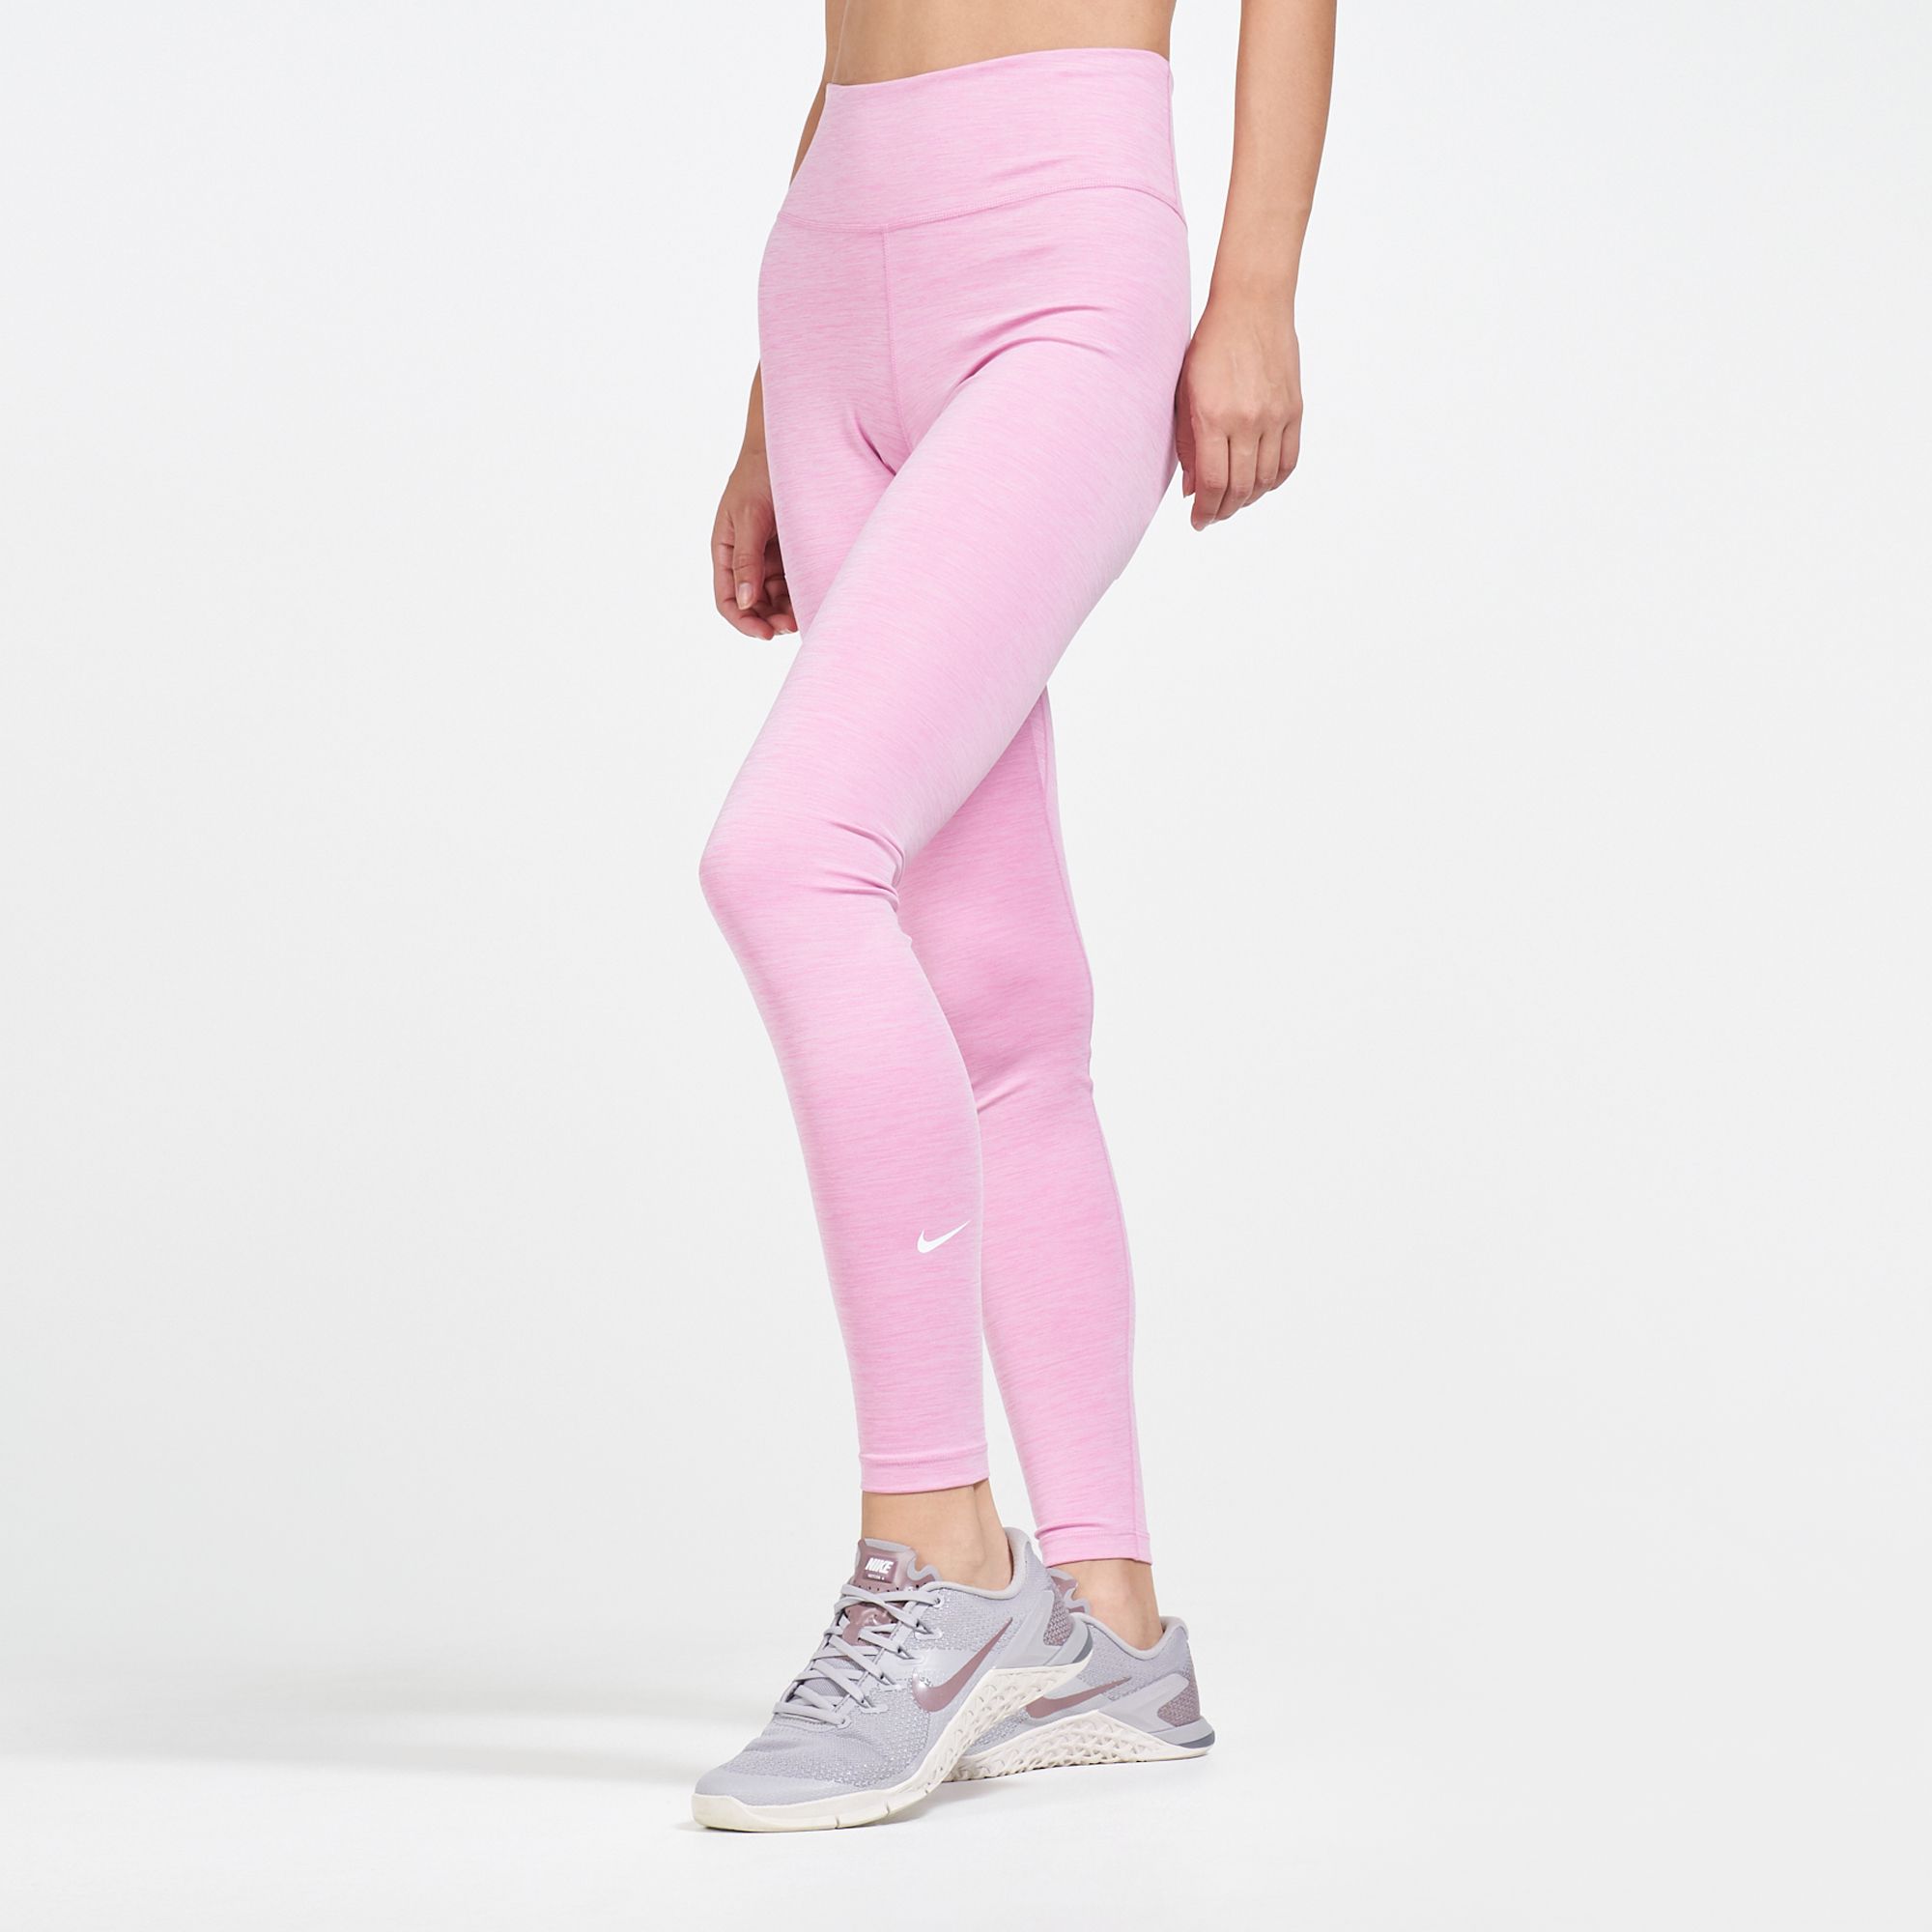 grey and pink nike leggings